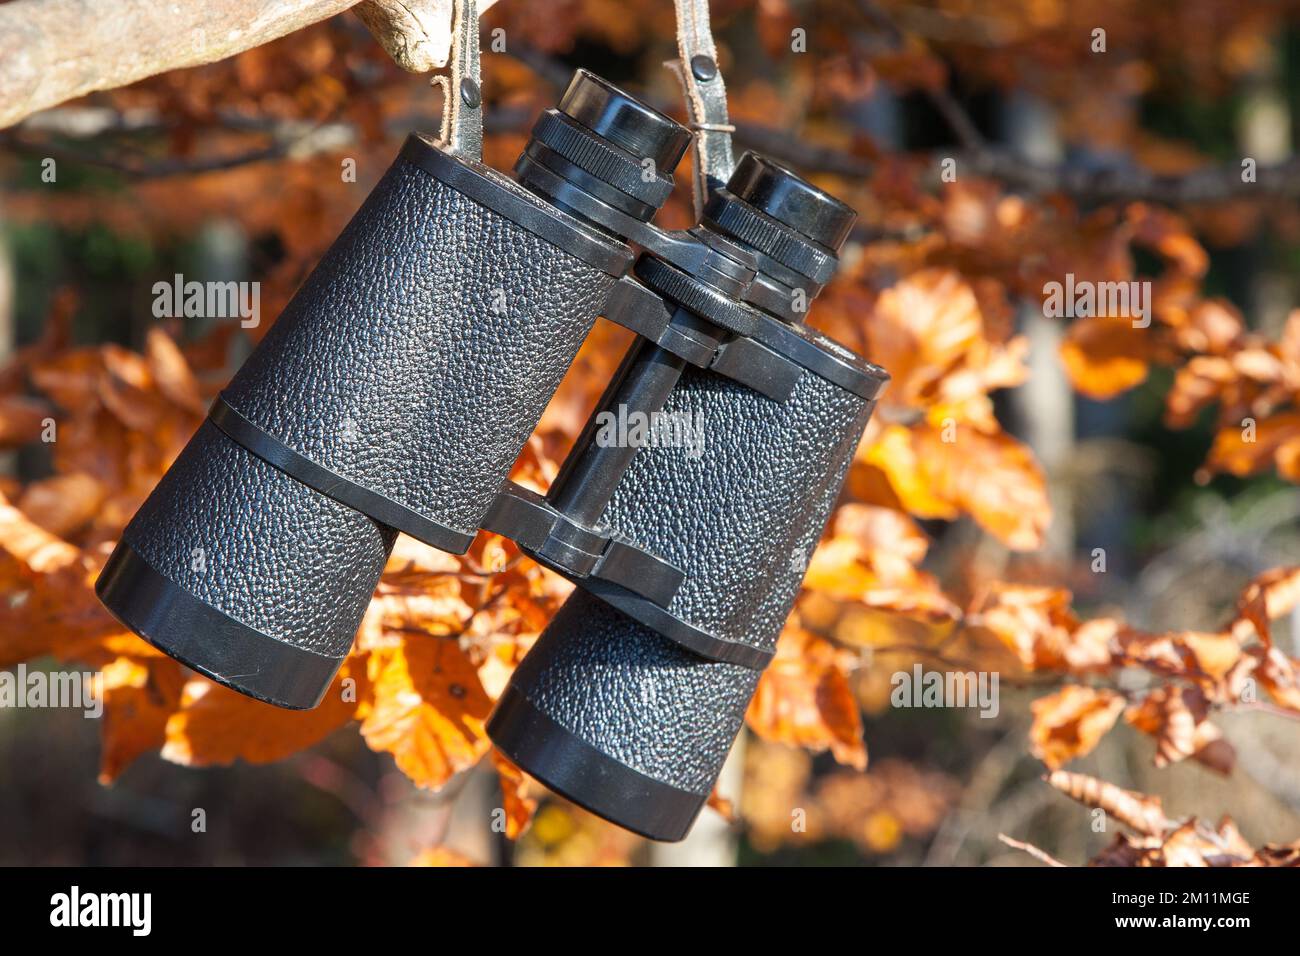 Ein Binokular hängt an einem Ast mit bunten Herbstblättern im Hintergrund. Ferngläser sind unverzichtbar für den erfolgreichen Jäger. Stockfoto